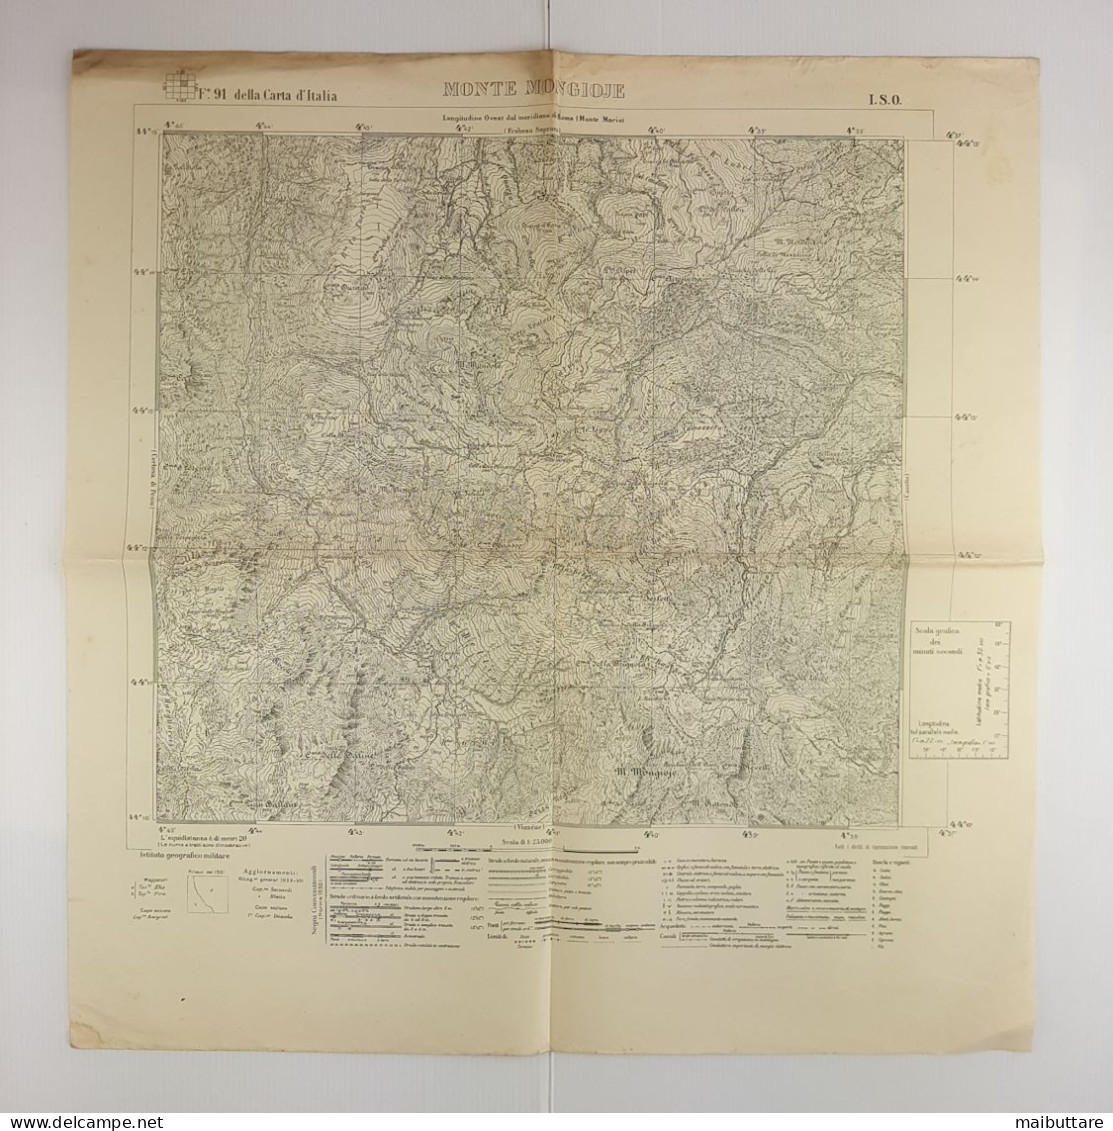 Carta Geografica, Cartina Mappa Militare Monte Mongioje F91 Della Carta D'Italia - Geographical Maps